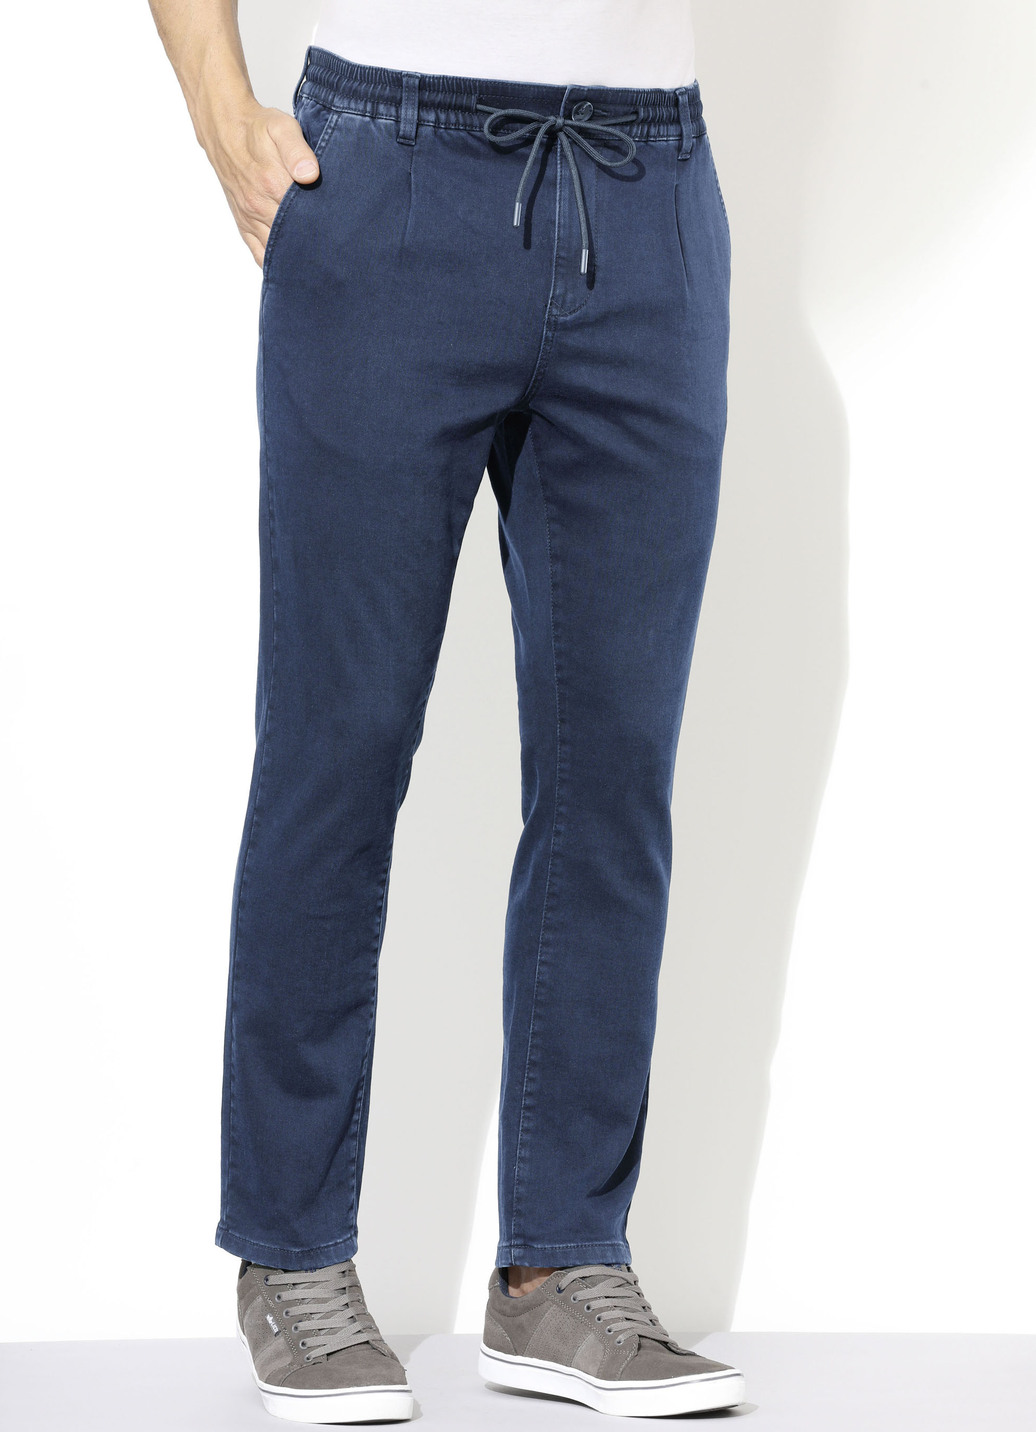 Superstretch-Jeans in 3 Farben, Jeansblau, Größe 24 von DANNECKER